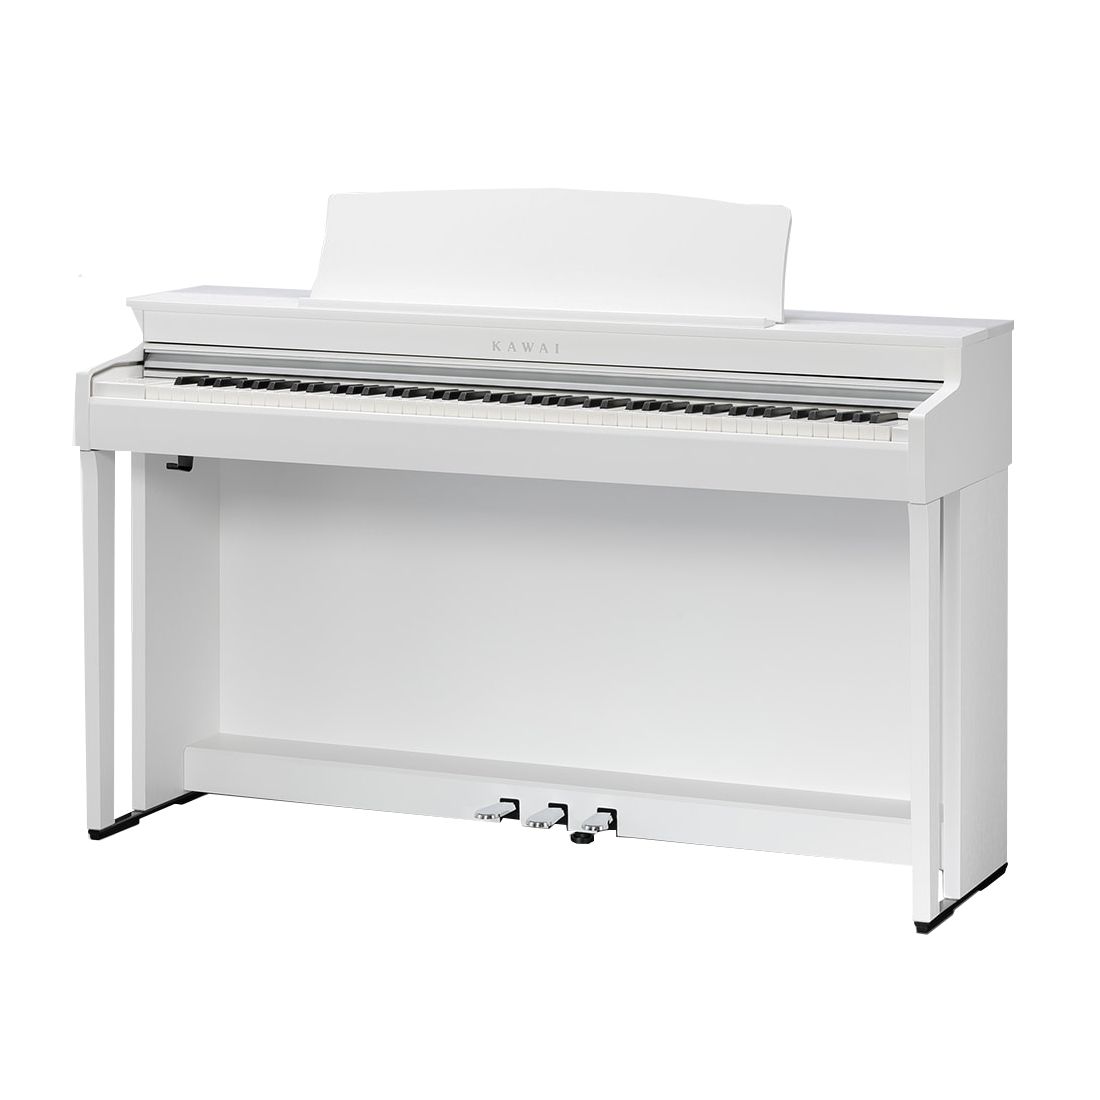 KAWAI CN301 W - цифровое пианино, банкетка, механика Responsive Hammer III, 88 клавиш, цвет белый купить в prostore.me